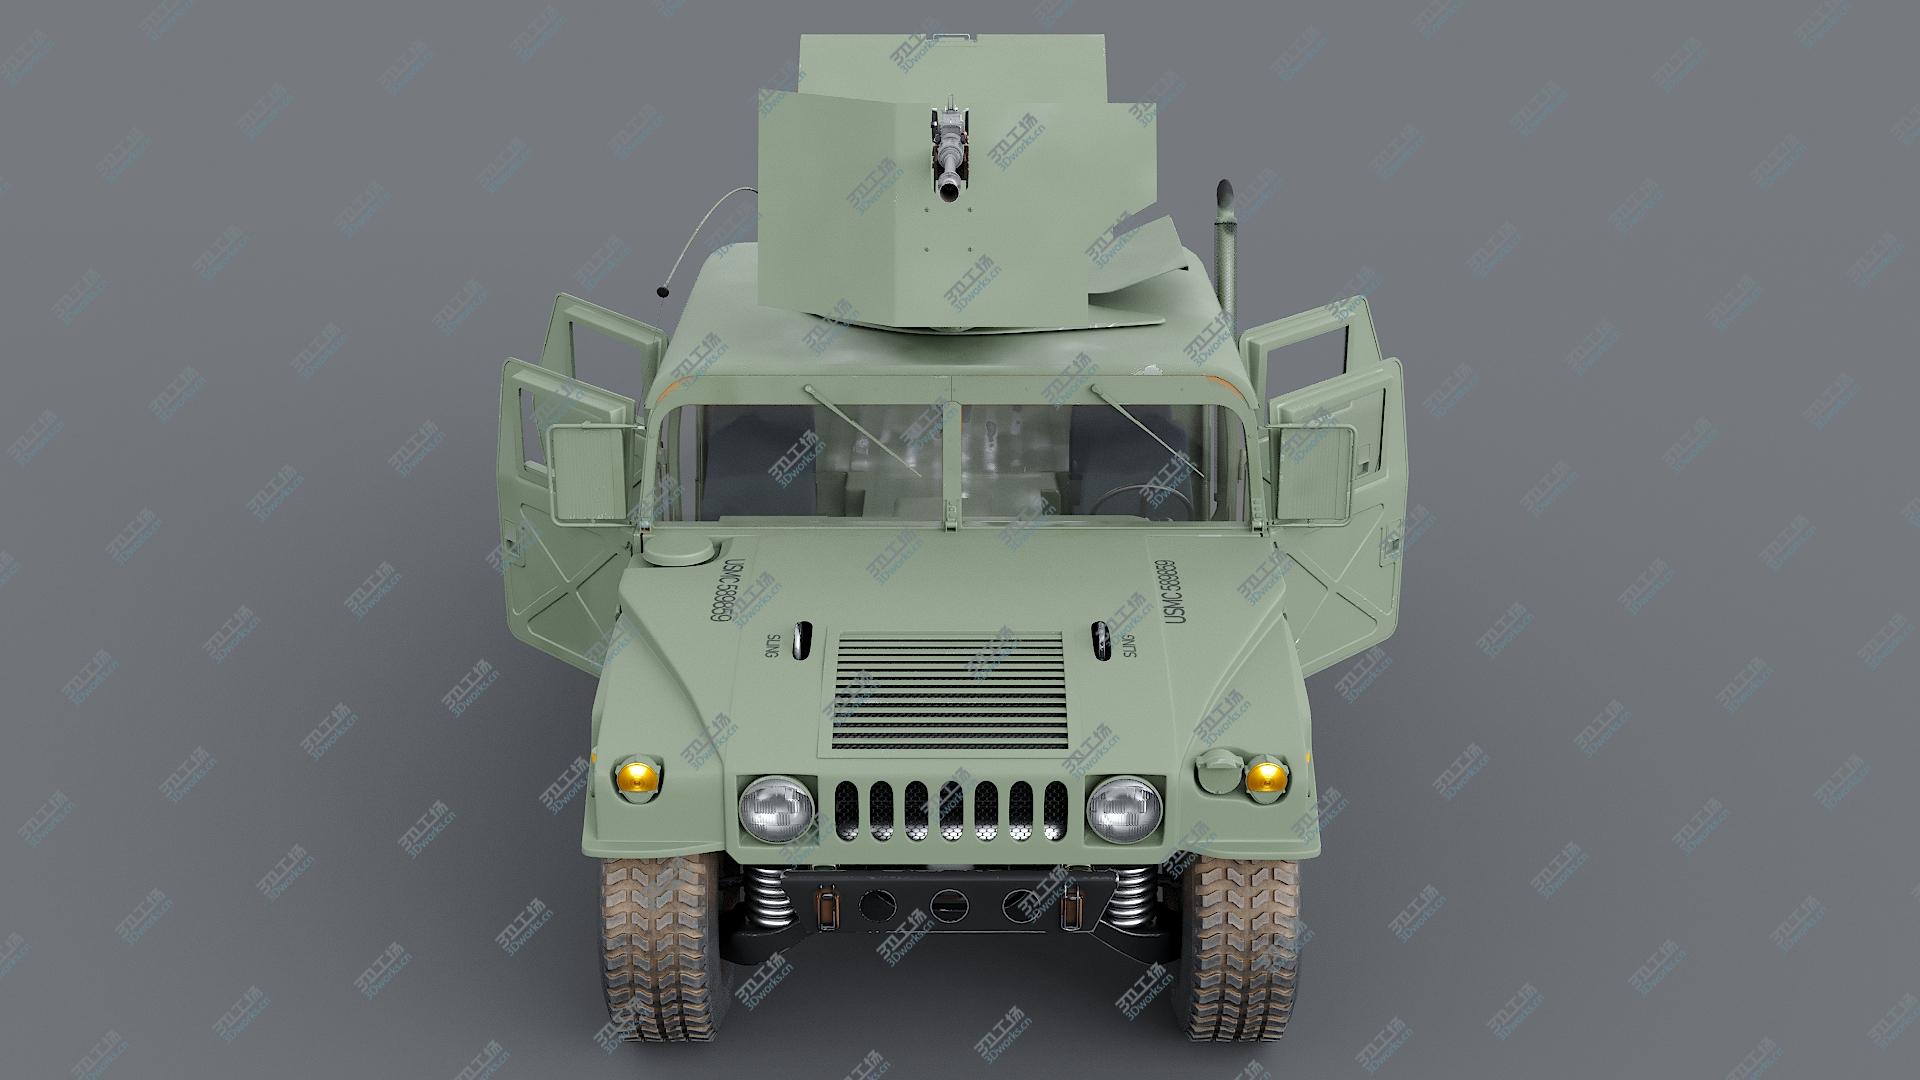 images/goods_img/202105071/3D Humvee M998 M1025 Weapons Carrier Slant Back/5.jpg